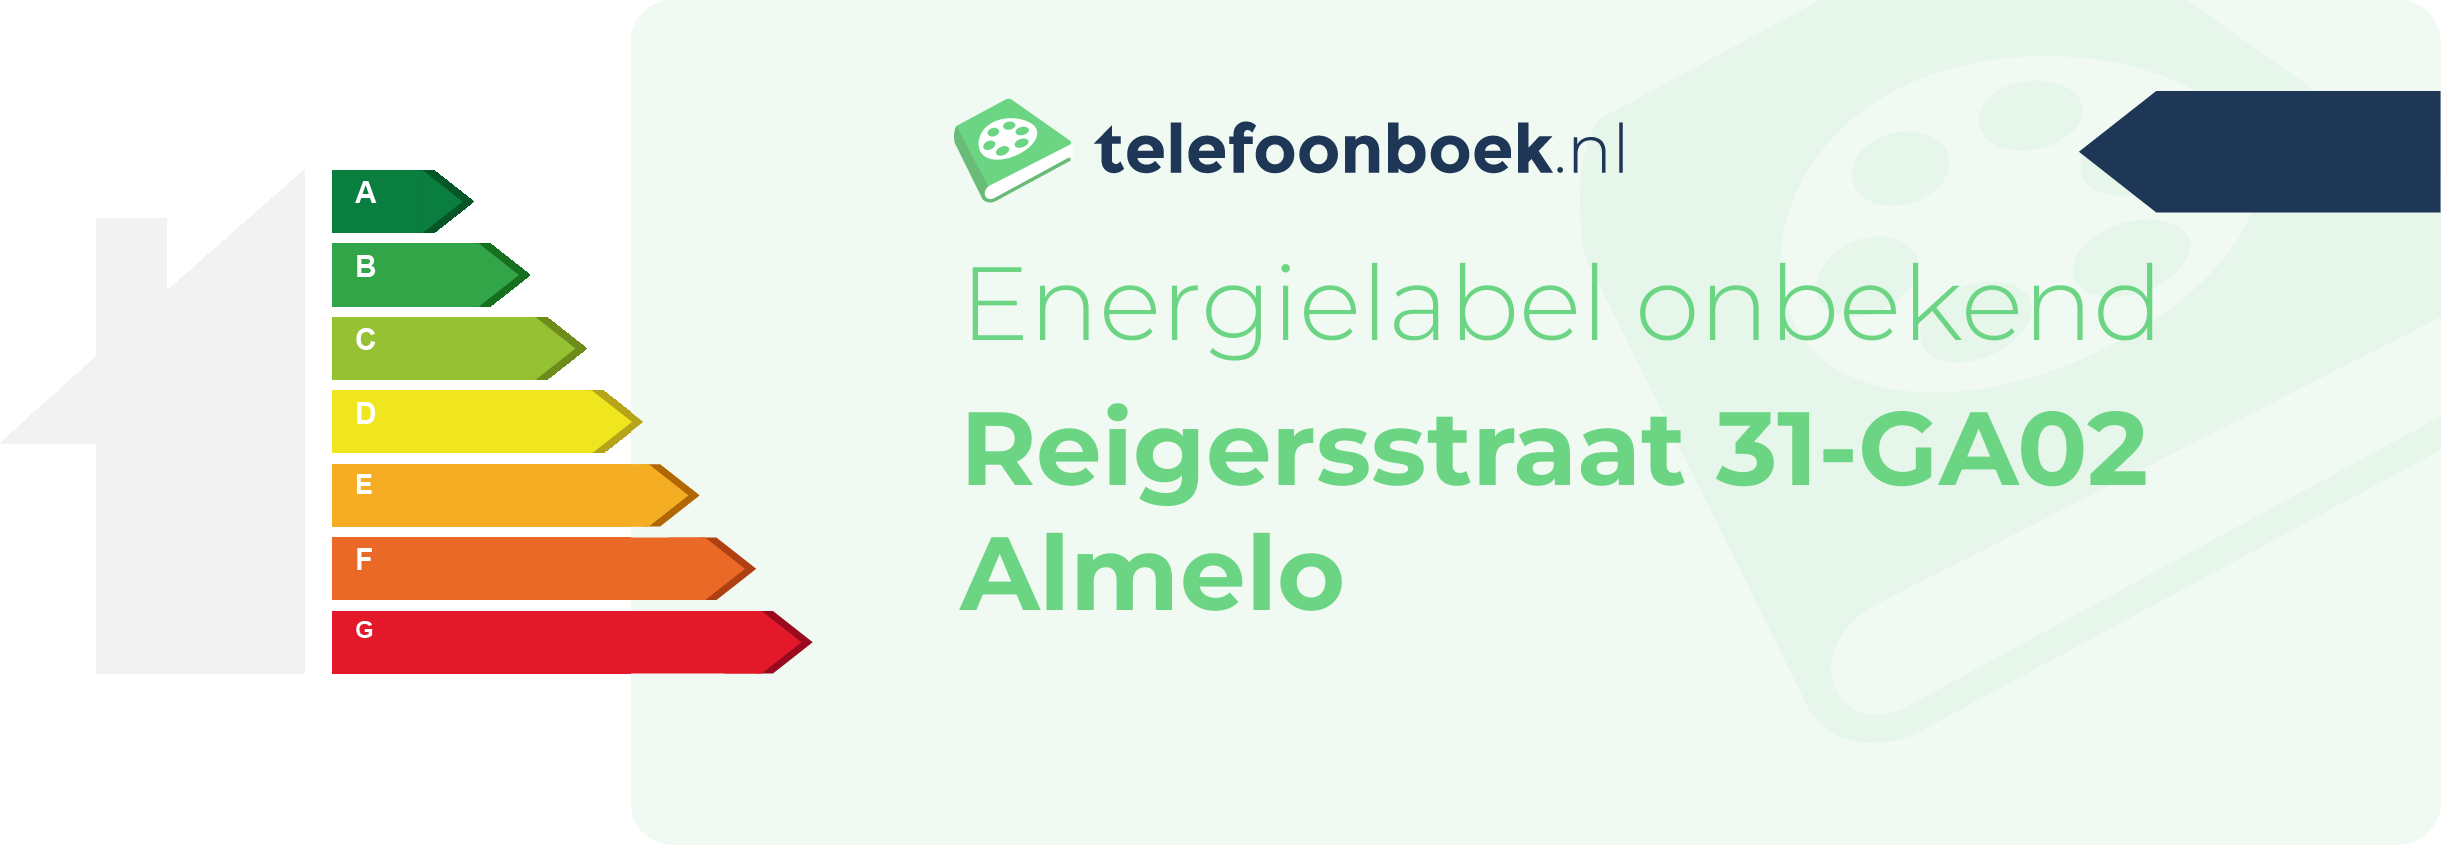 Energielabel Reigersstraat 31-GA02 Almelo